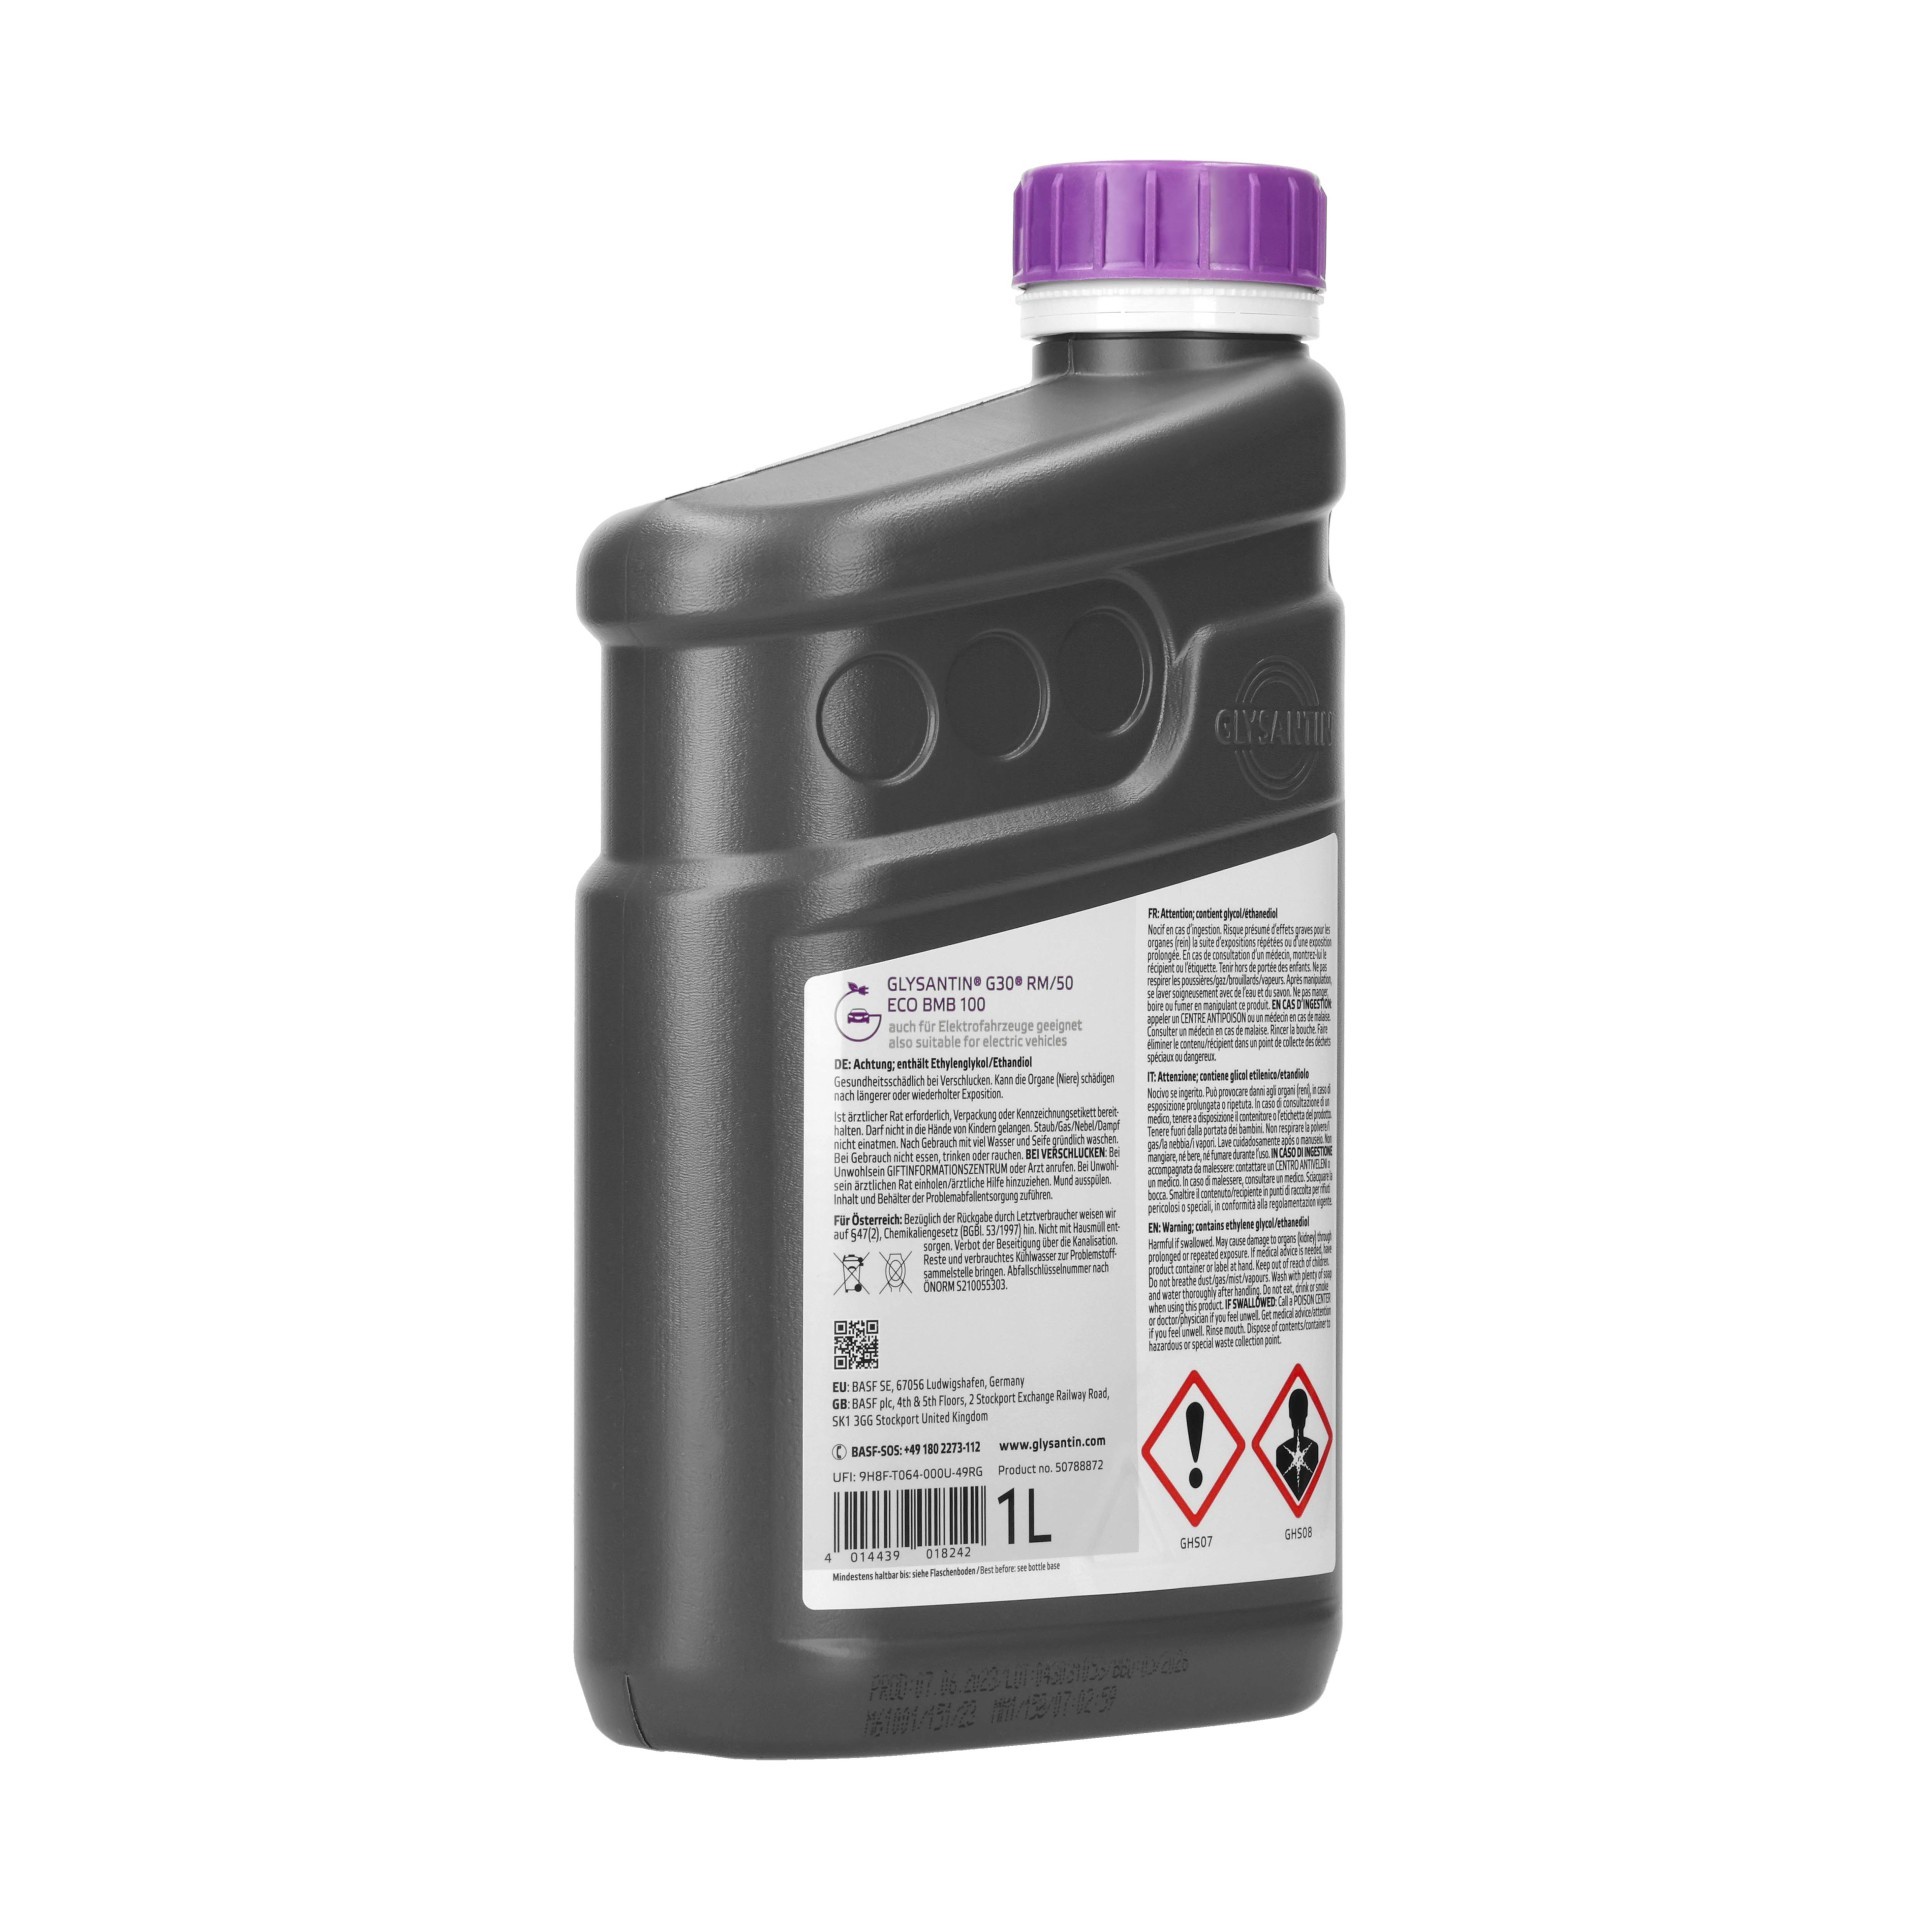 Kühlerfrostschutz Konzentrat 1:1 PG40 / G12++ 5 Liter